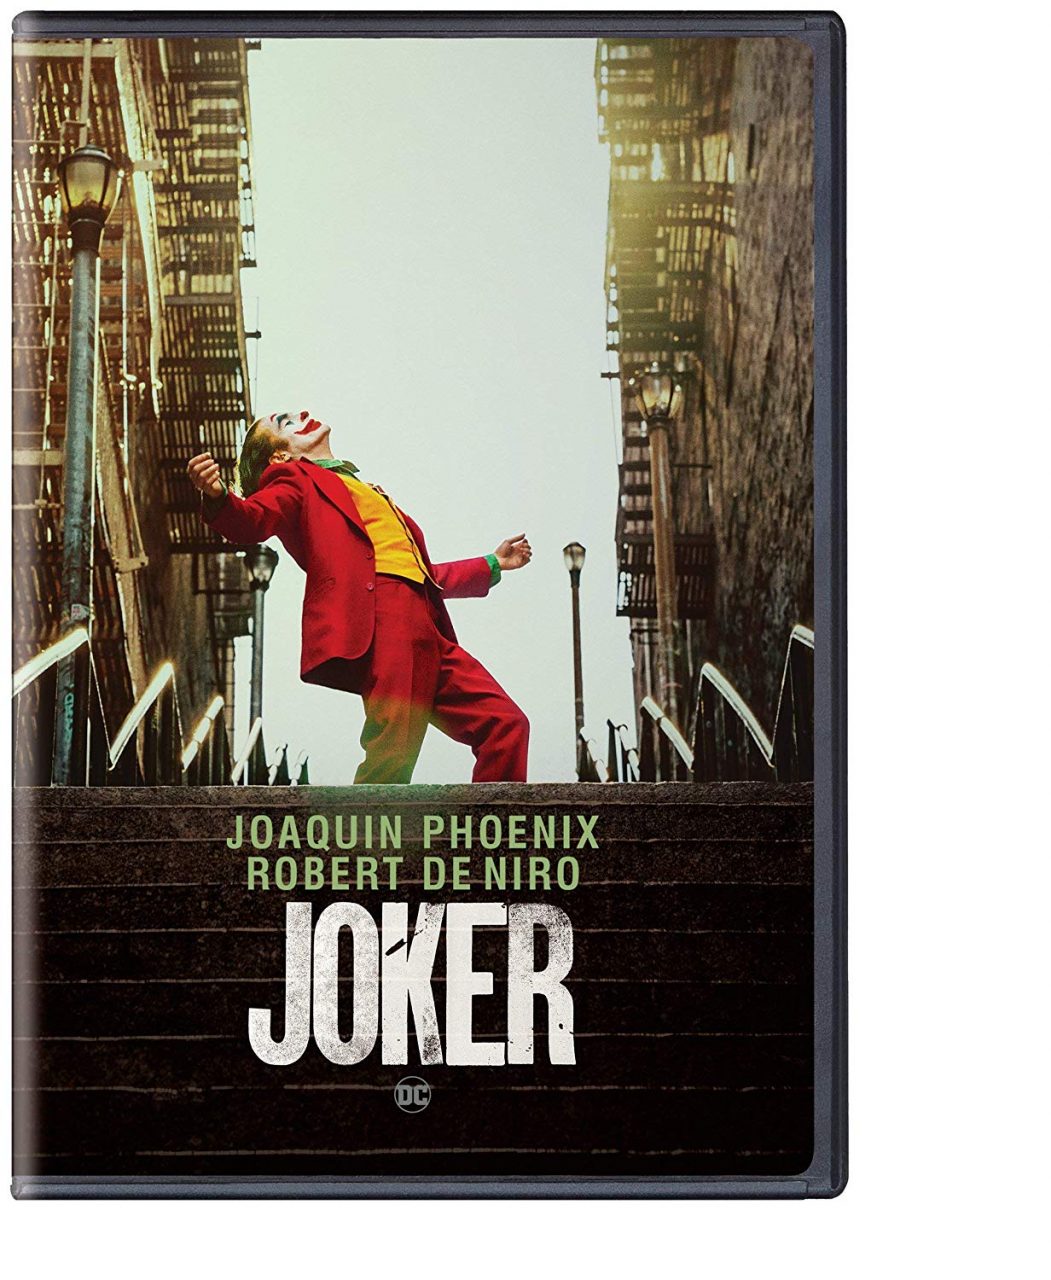 Joker DVD cover (Warner Bros. Home Entertainment)